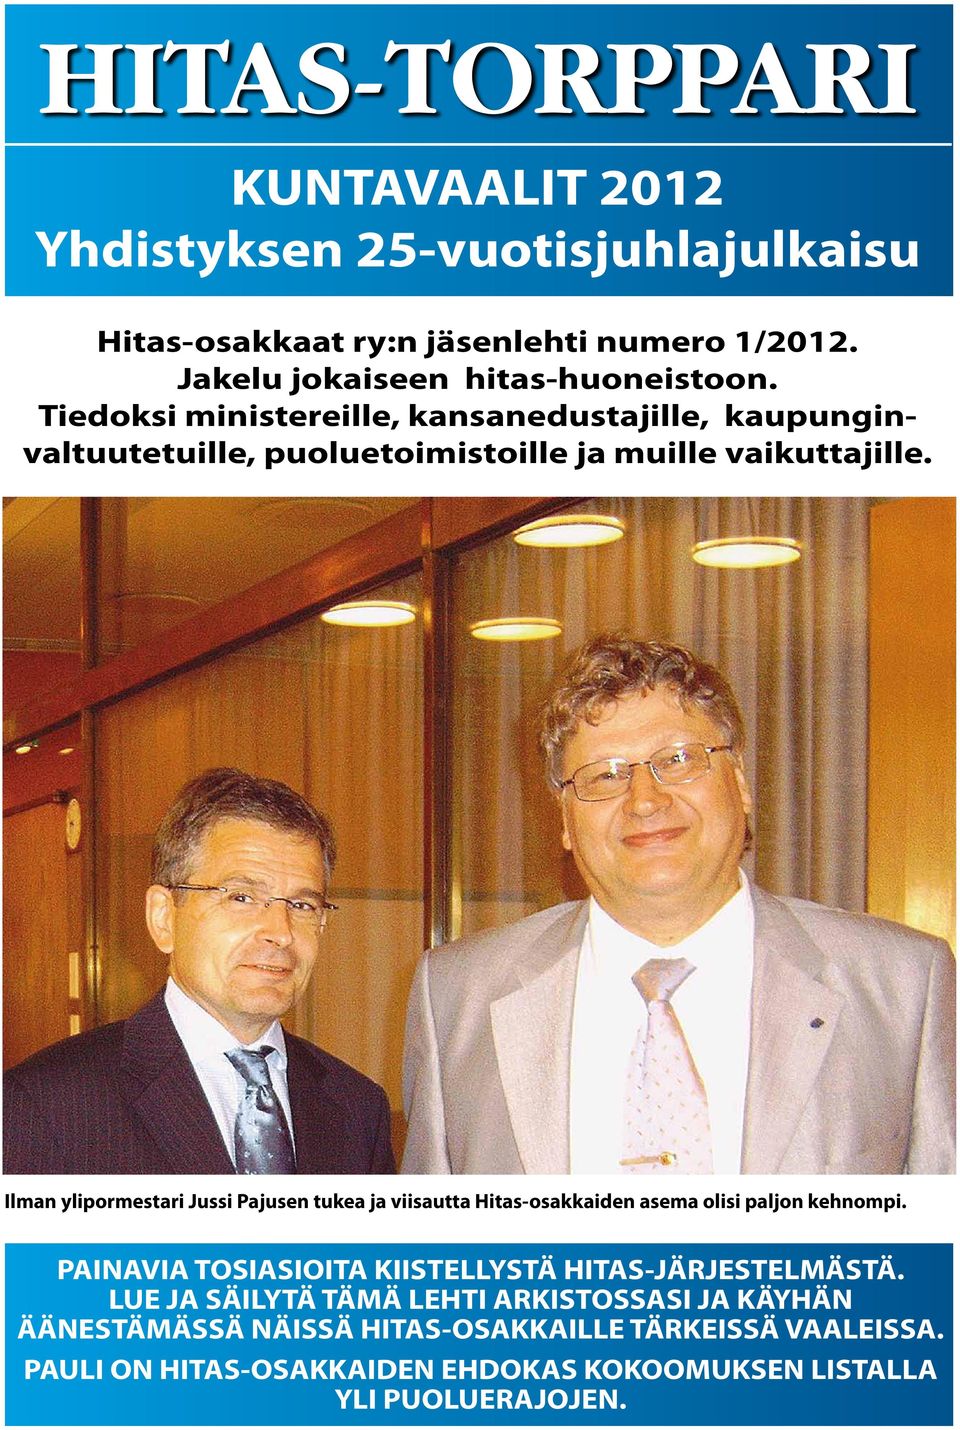 Ilman ylipormestari Jussi Pajusen tukea ja viisautta Hitas-osakkaiden asema olisi paljon kehnompi.